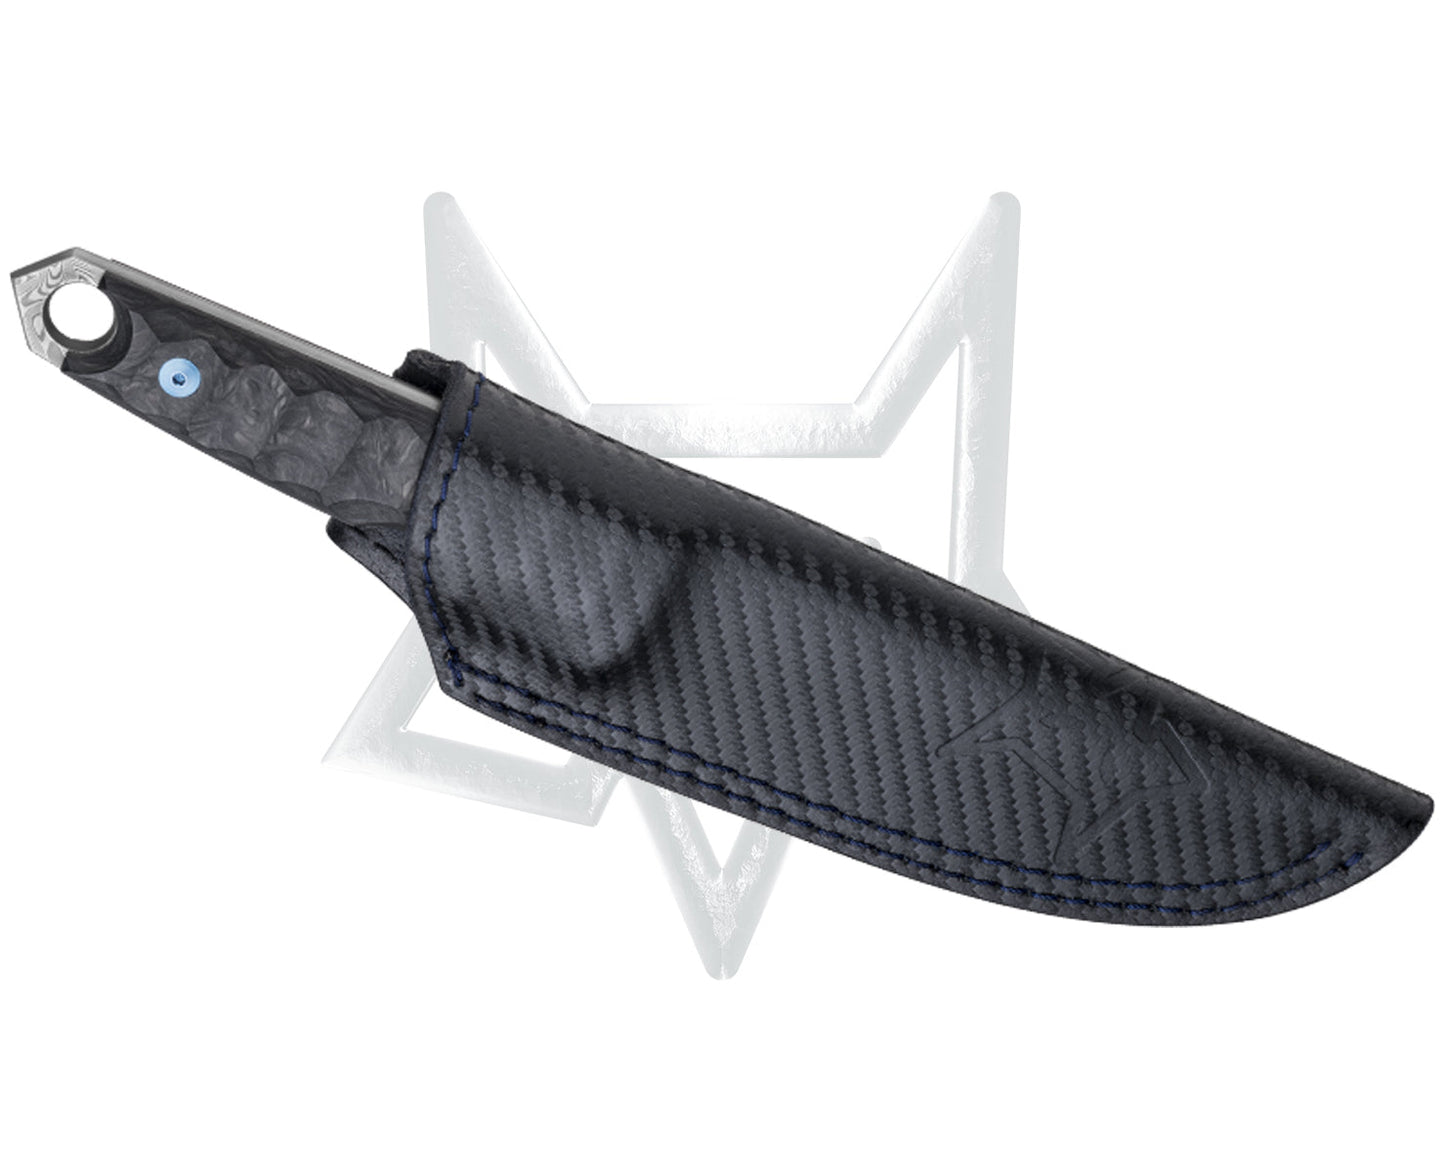 Fox Ryu Balbach Damast 5.12" Damascus Fixed Blade Knife with Elforyn Ivory Handle FX-634 DES